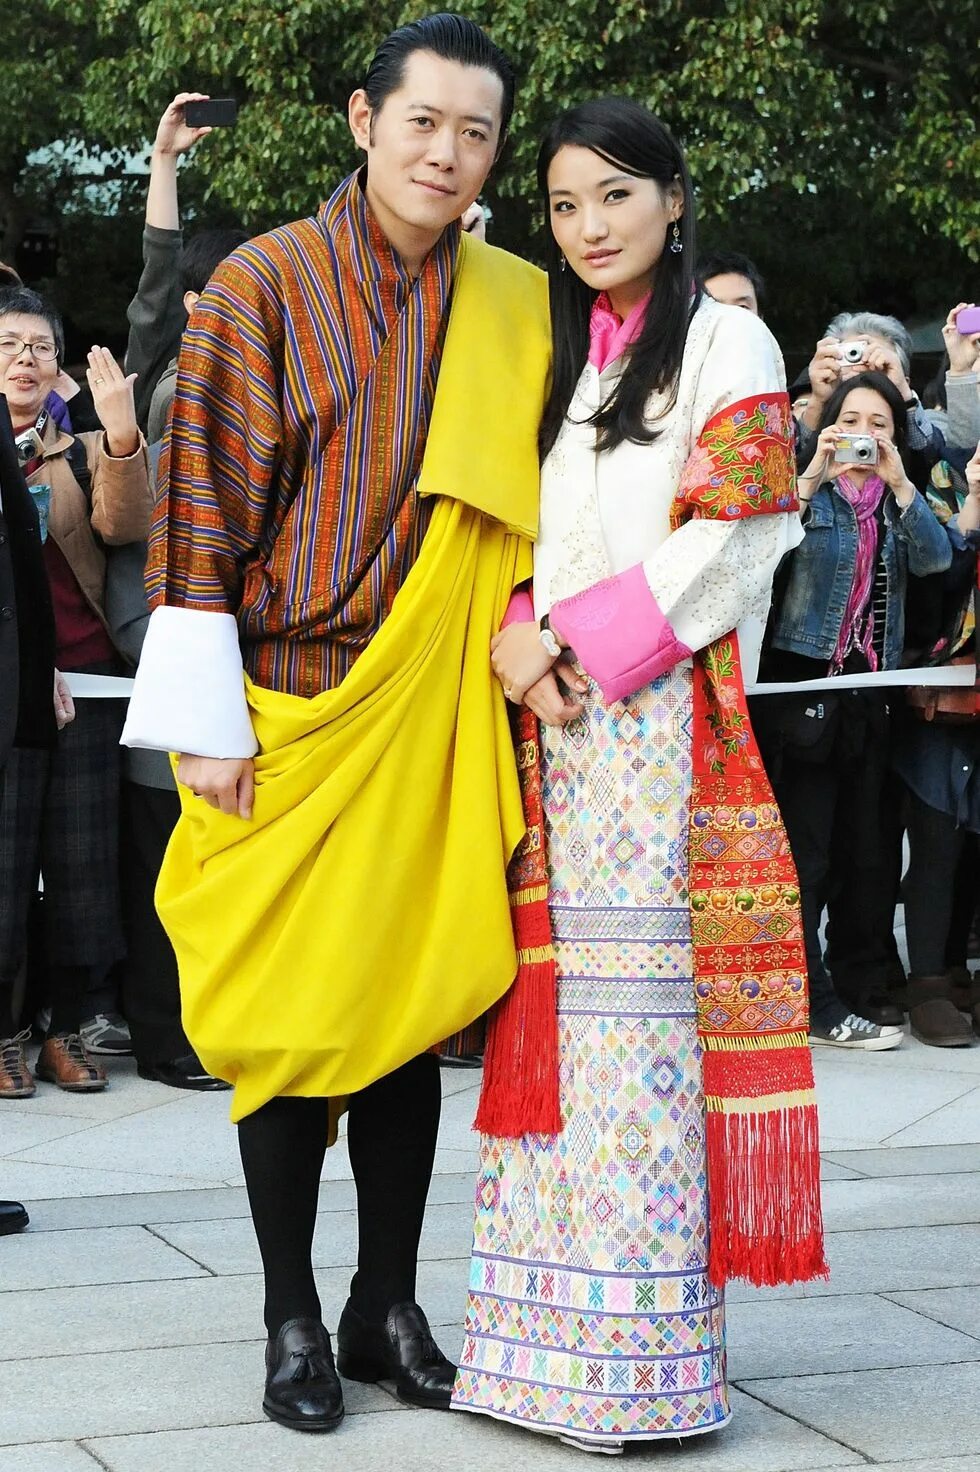 Бутаное. Королева бутана Джетсун Пема. Королева Джецун Пема бутан свадьба. Король Джигме Кхесар Намгьял Вангчук. Джигме и Джецун.